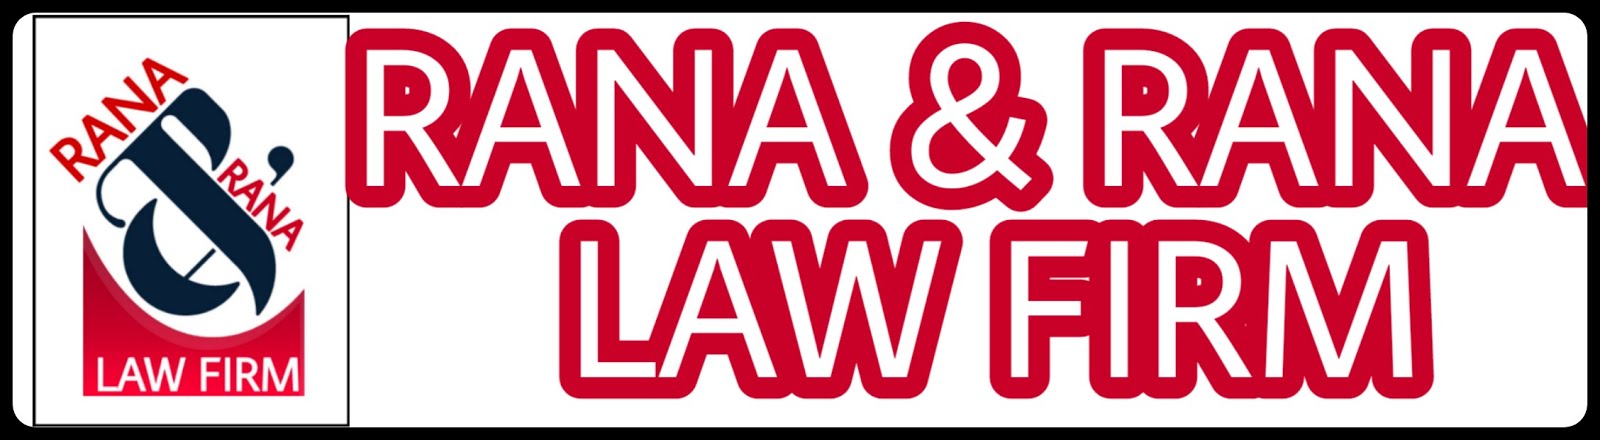 Rana & Rana Law Firm